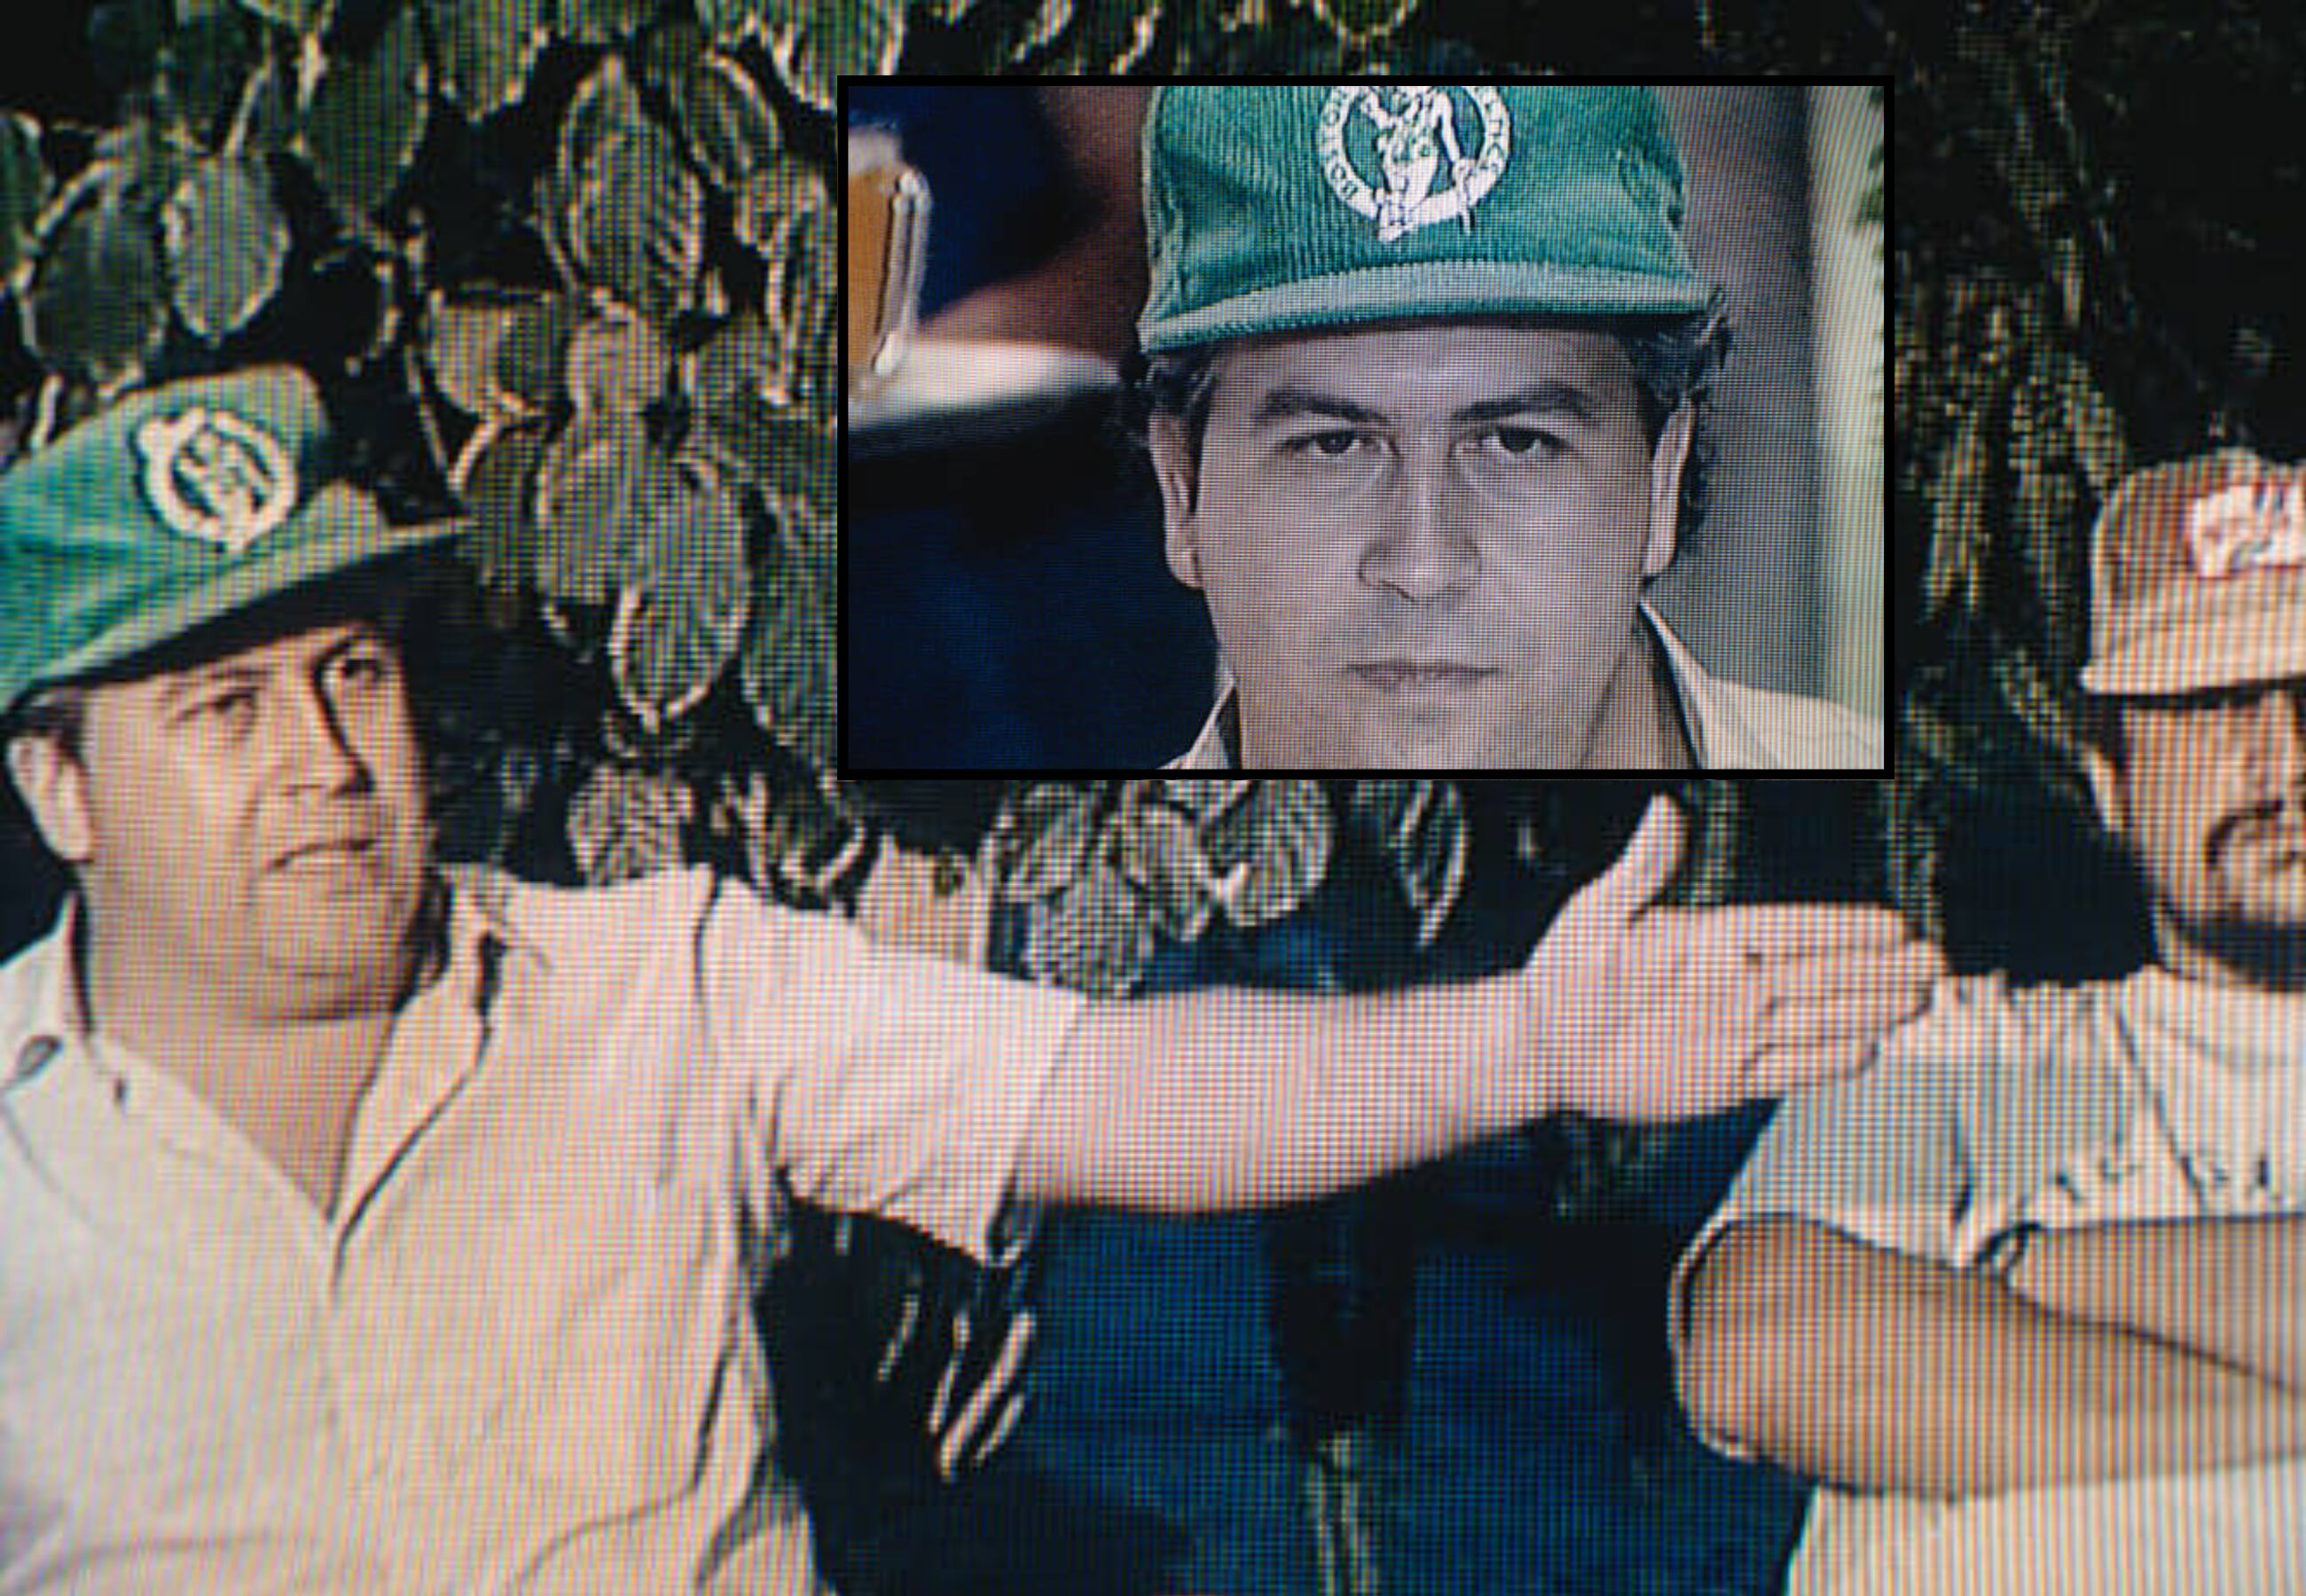 'Yo filmé a Pablo Escobar', el relato de un periodista francés que grabó sin permiso al capo